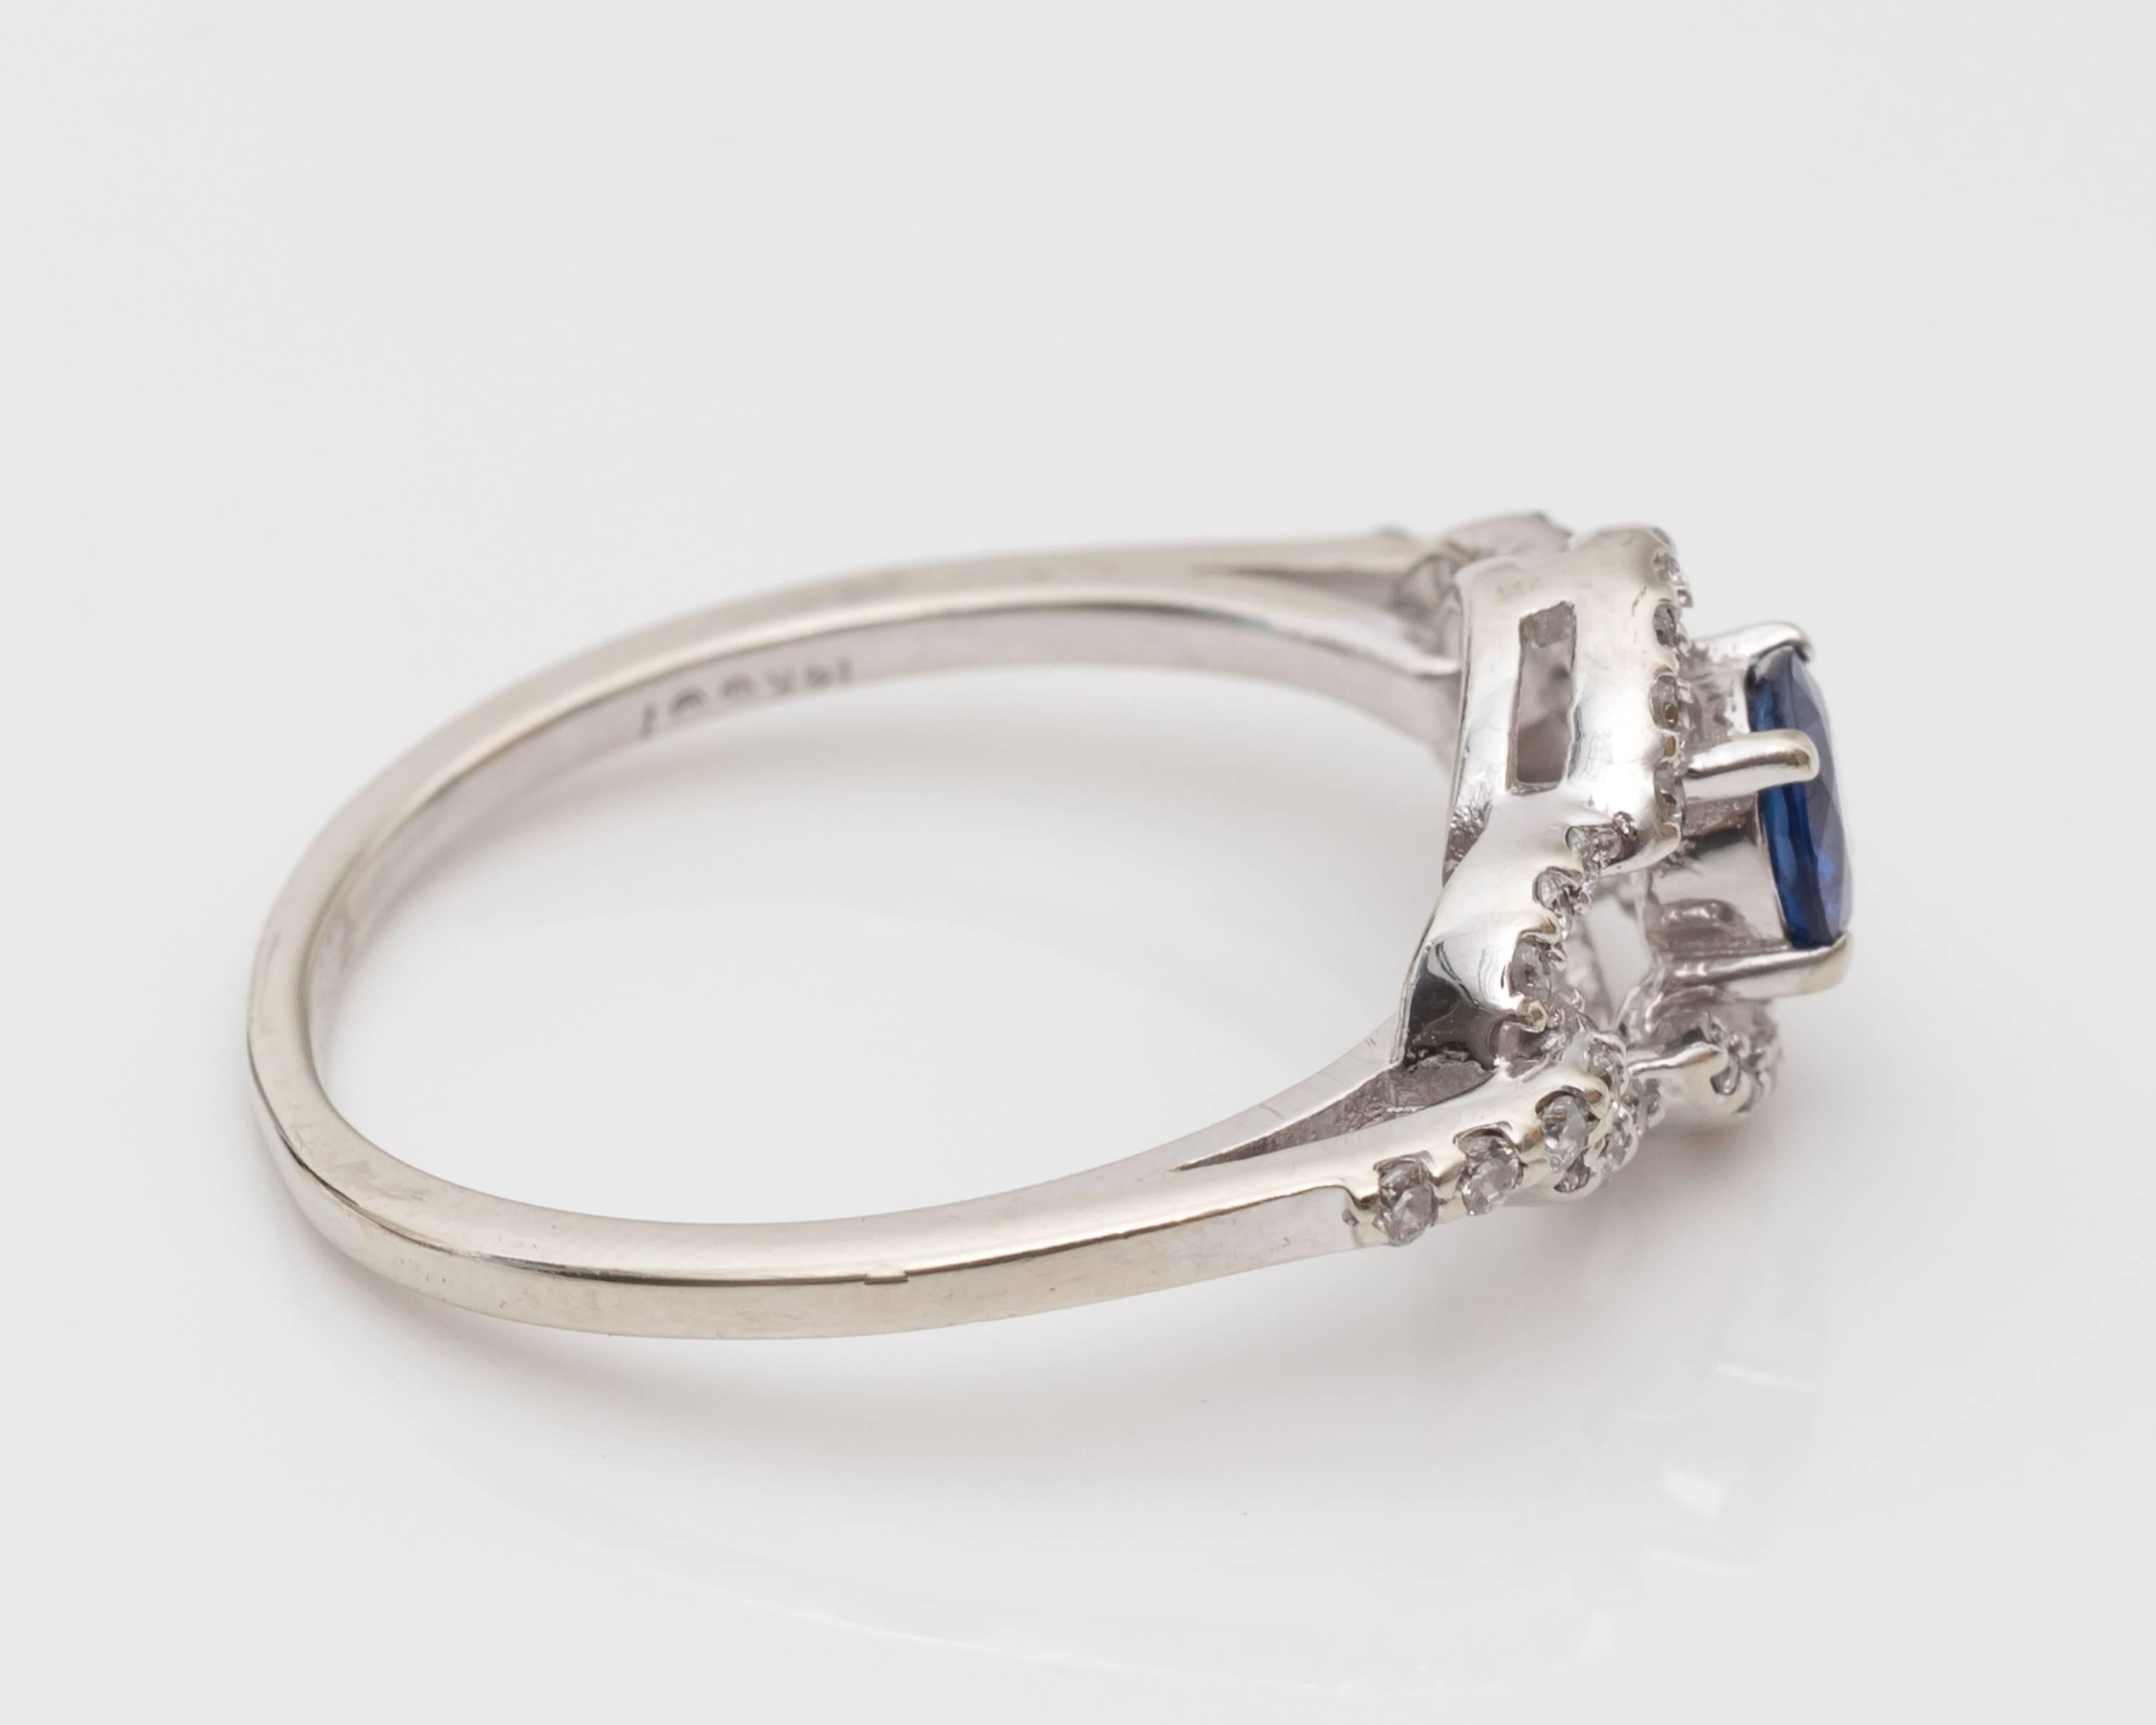 Wunderschöner Ring mit Saphir und Diamant aus 14 Karat Weißgold
Zentrum Saphir - lebendige blaue Farbe, mit einem Gesamtgewicht von 0,40 Karat, und rund geschliffen.
Diamanten - 0,40 Karat insgesamt bieten so viel Funkeln und Glanz! 

Der Saphir ist